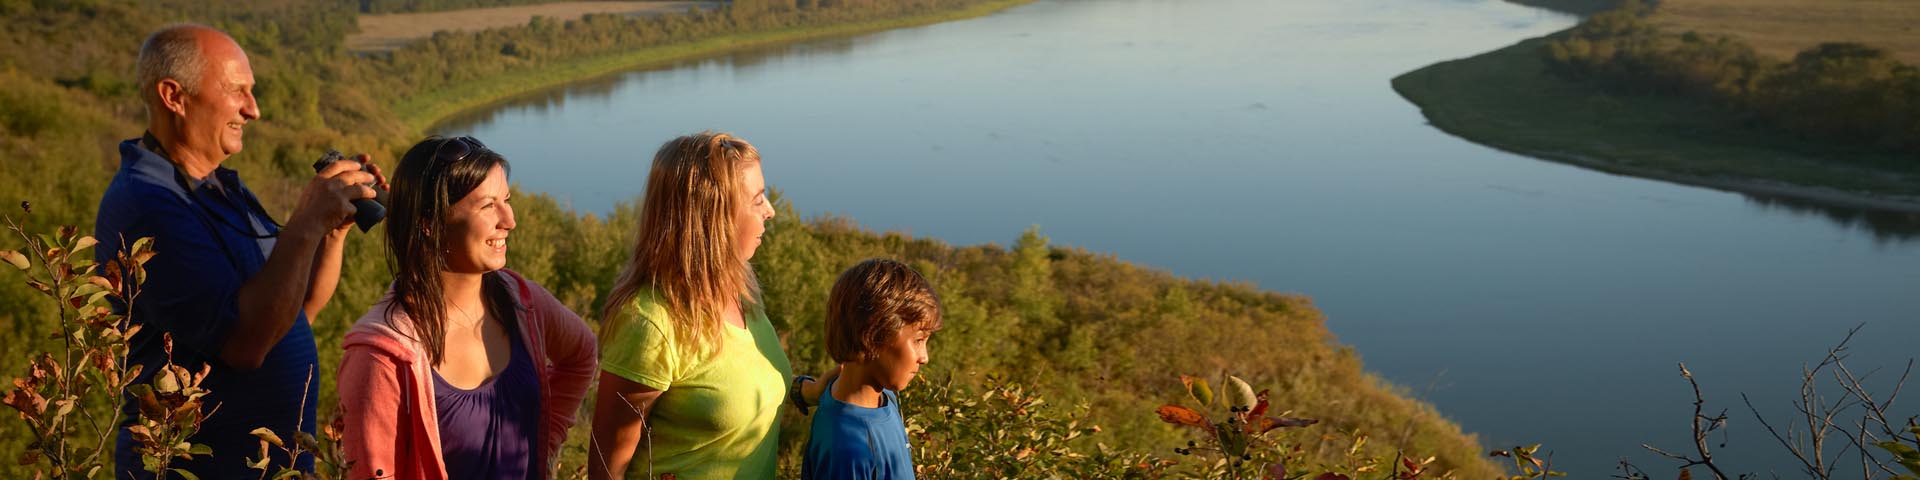 Quatre visiteurs regardent le paysage au coucher du soleil près de la rivière au lieu historique national de Batoche.